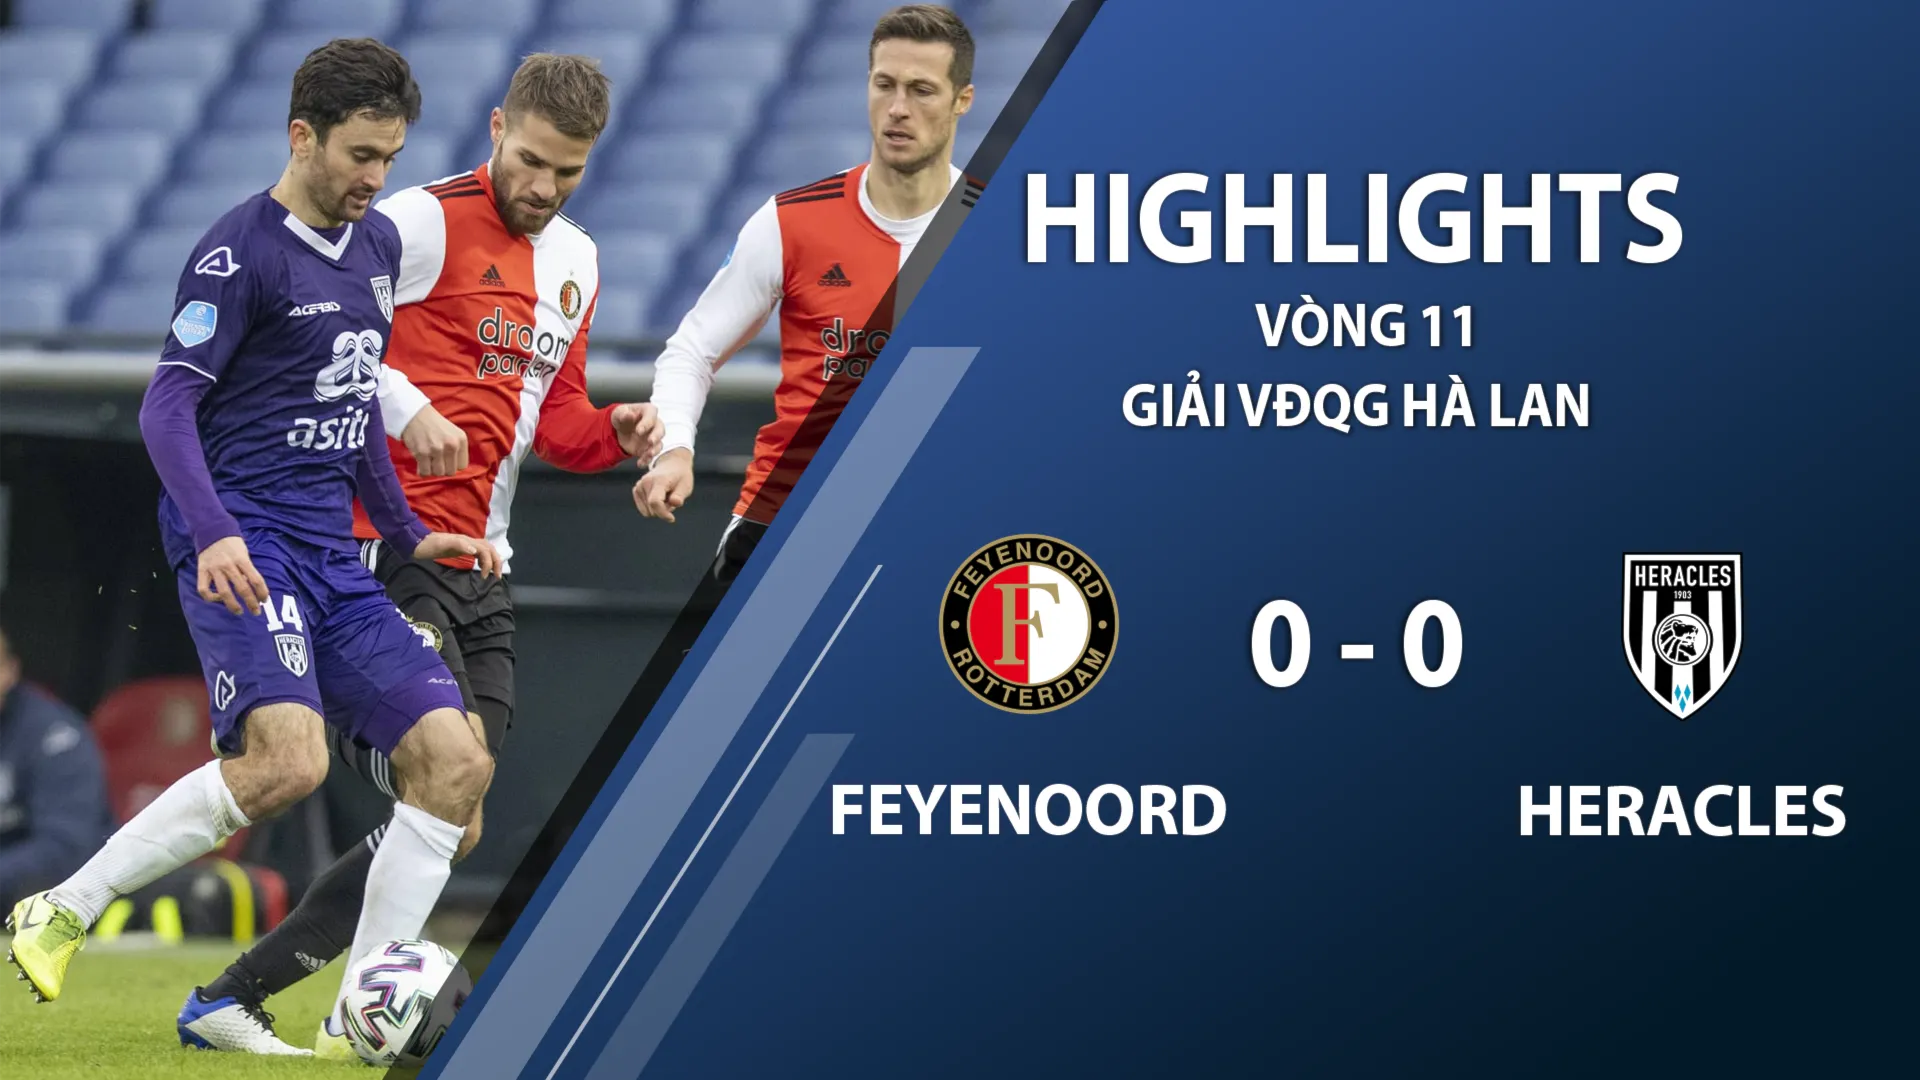 Highlights Feyenoord 0-0 Heracles (vòng 11 giải VĐQG Hà Lan 2020/21)